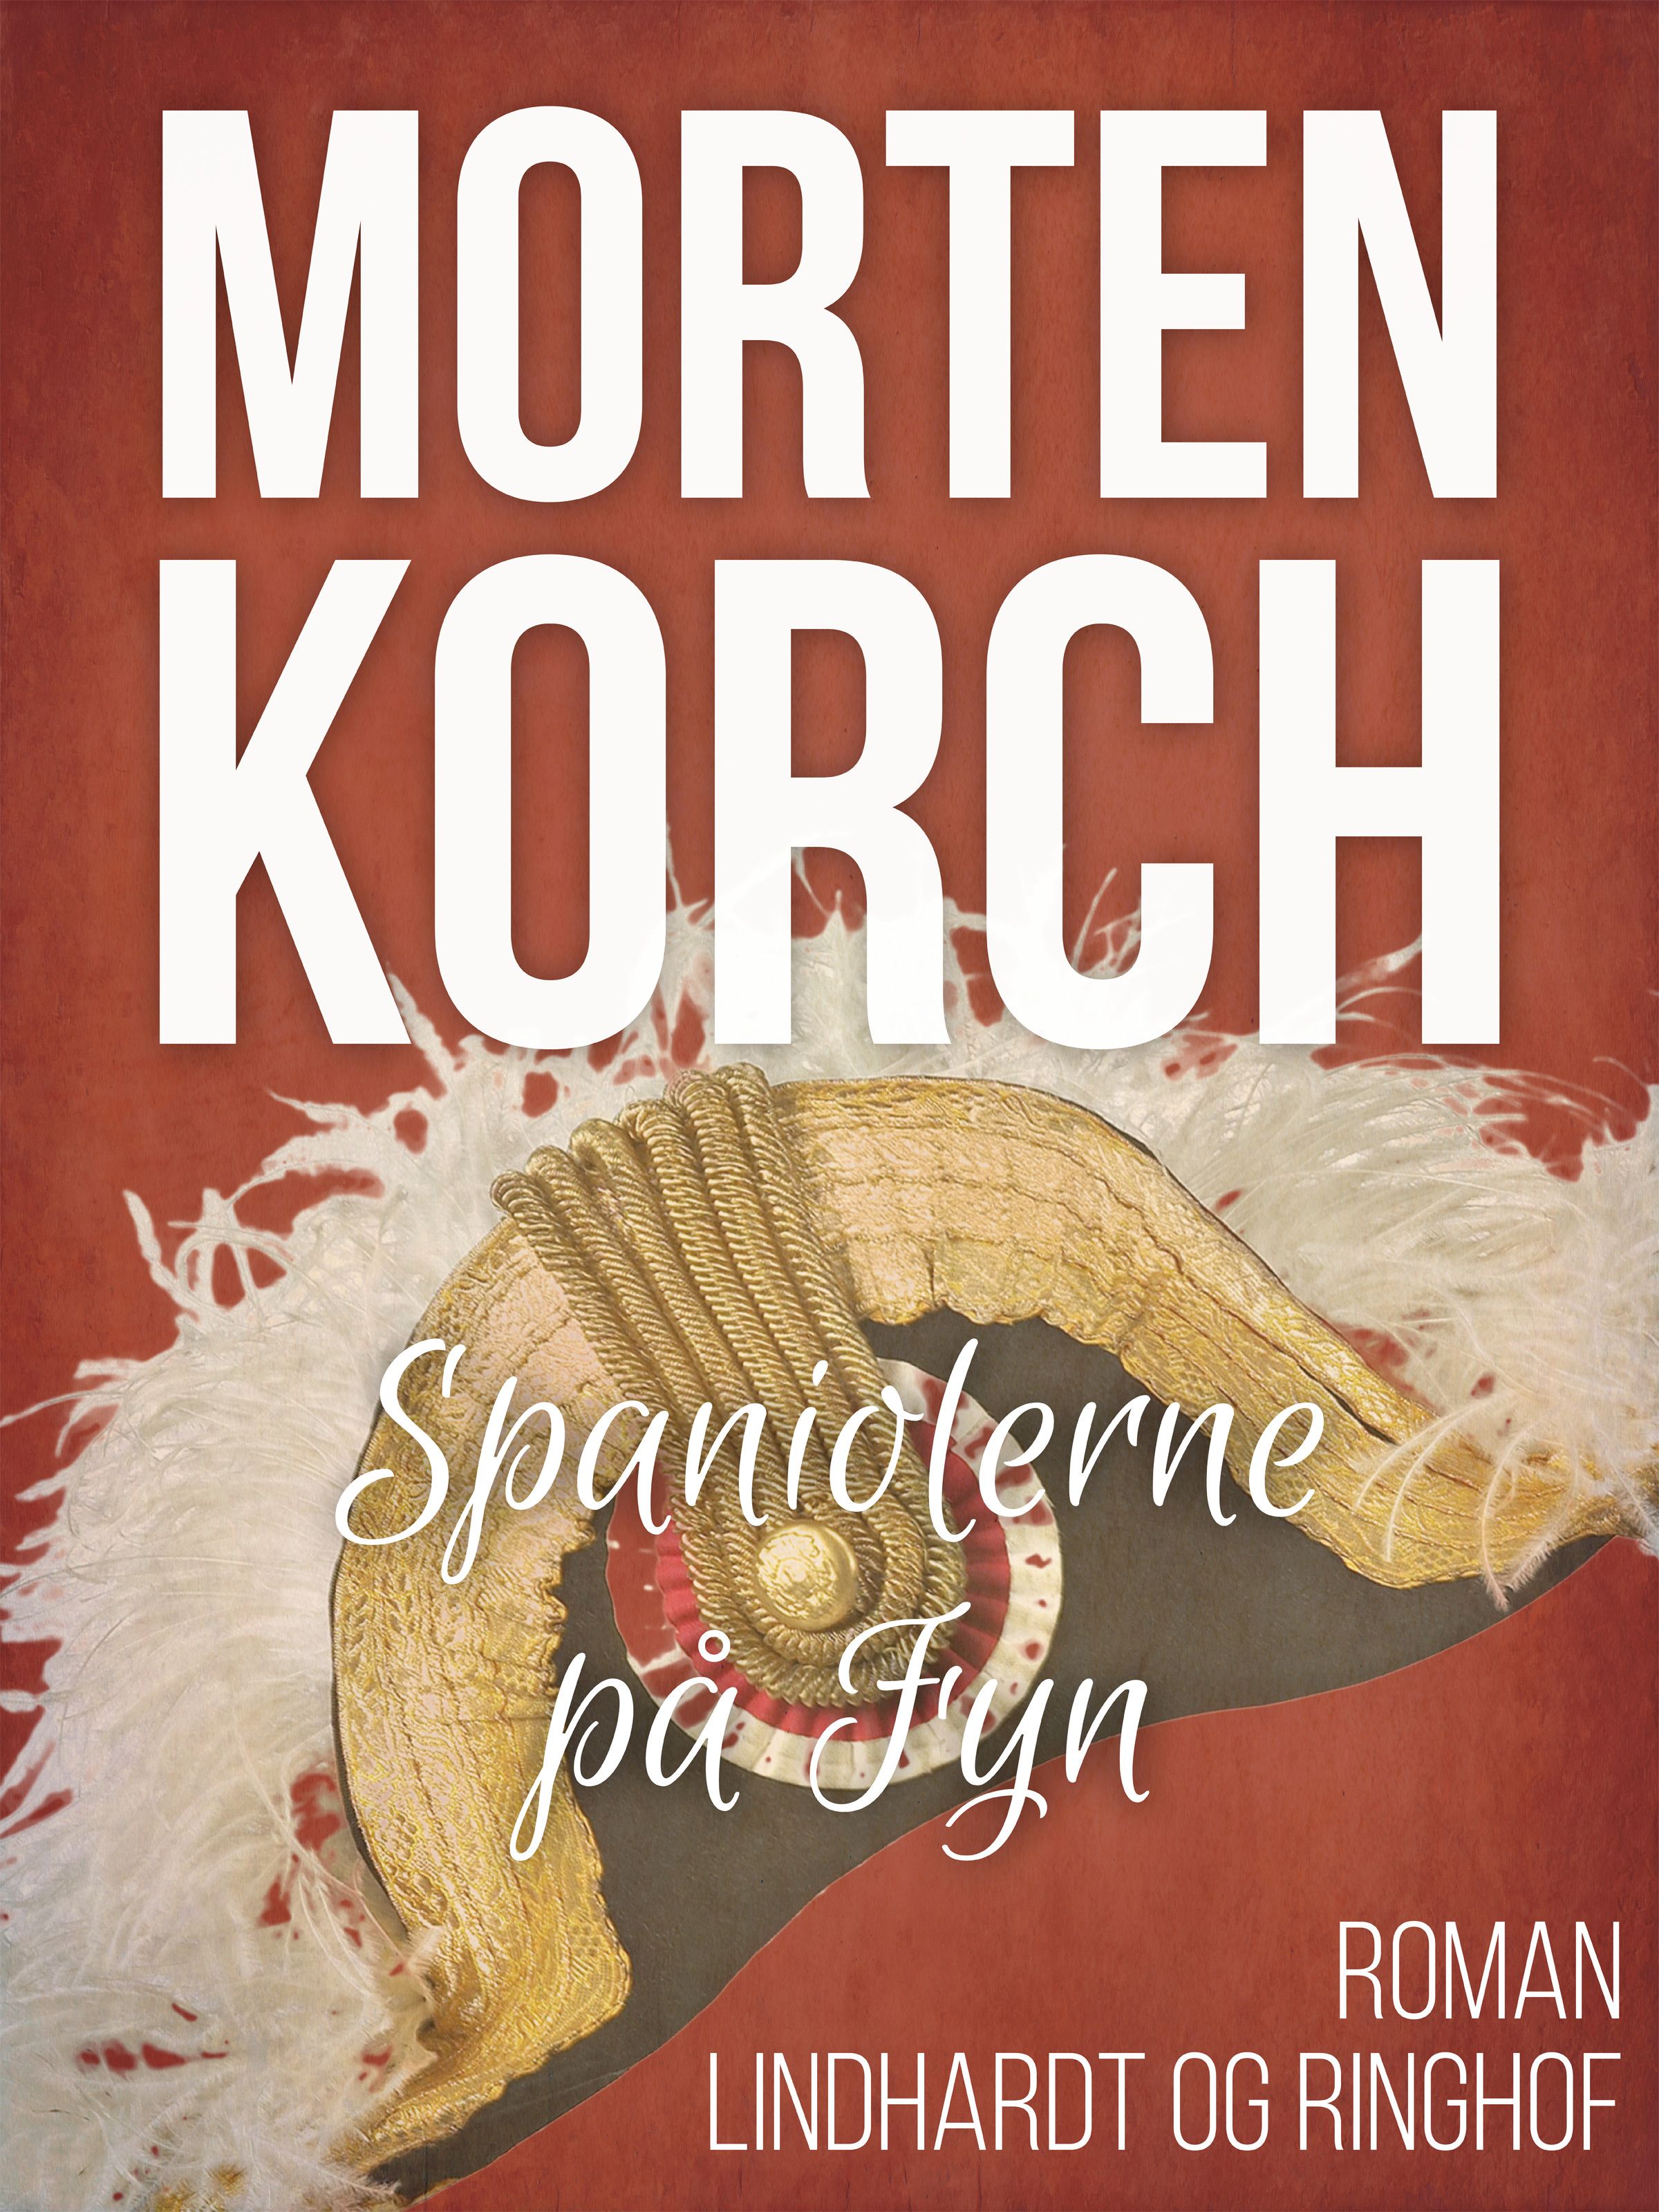 Spaniolerne på Fyn, ljudbok av Morten Korch